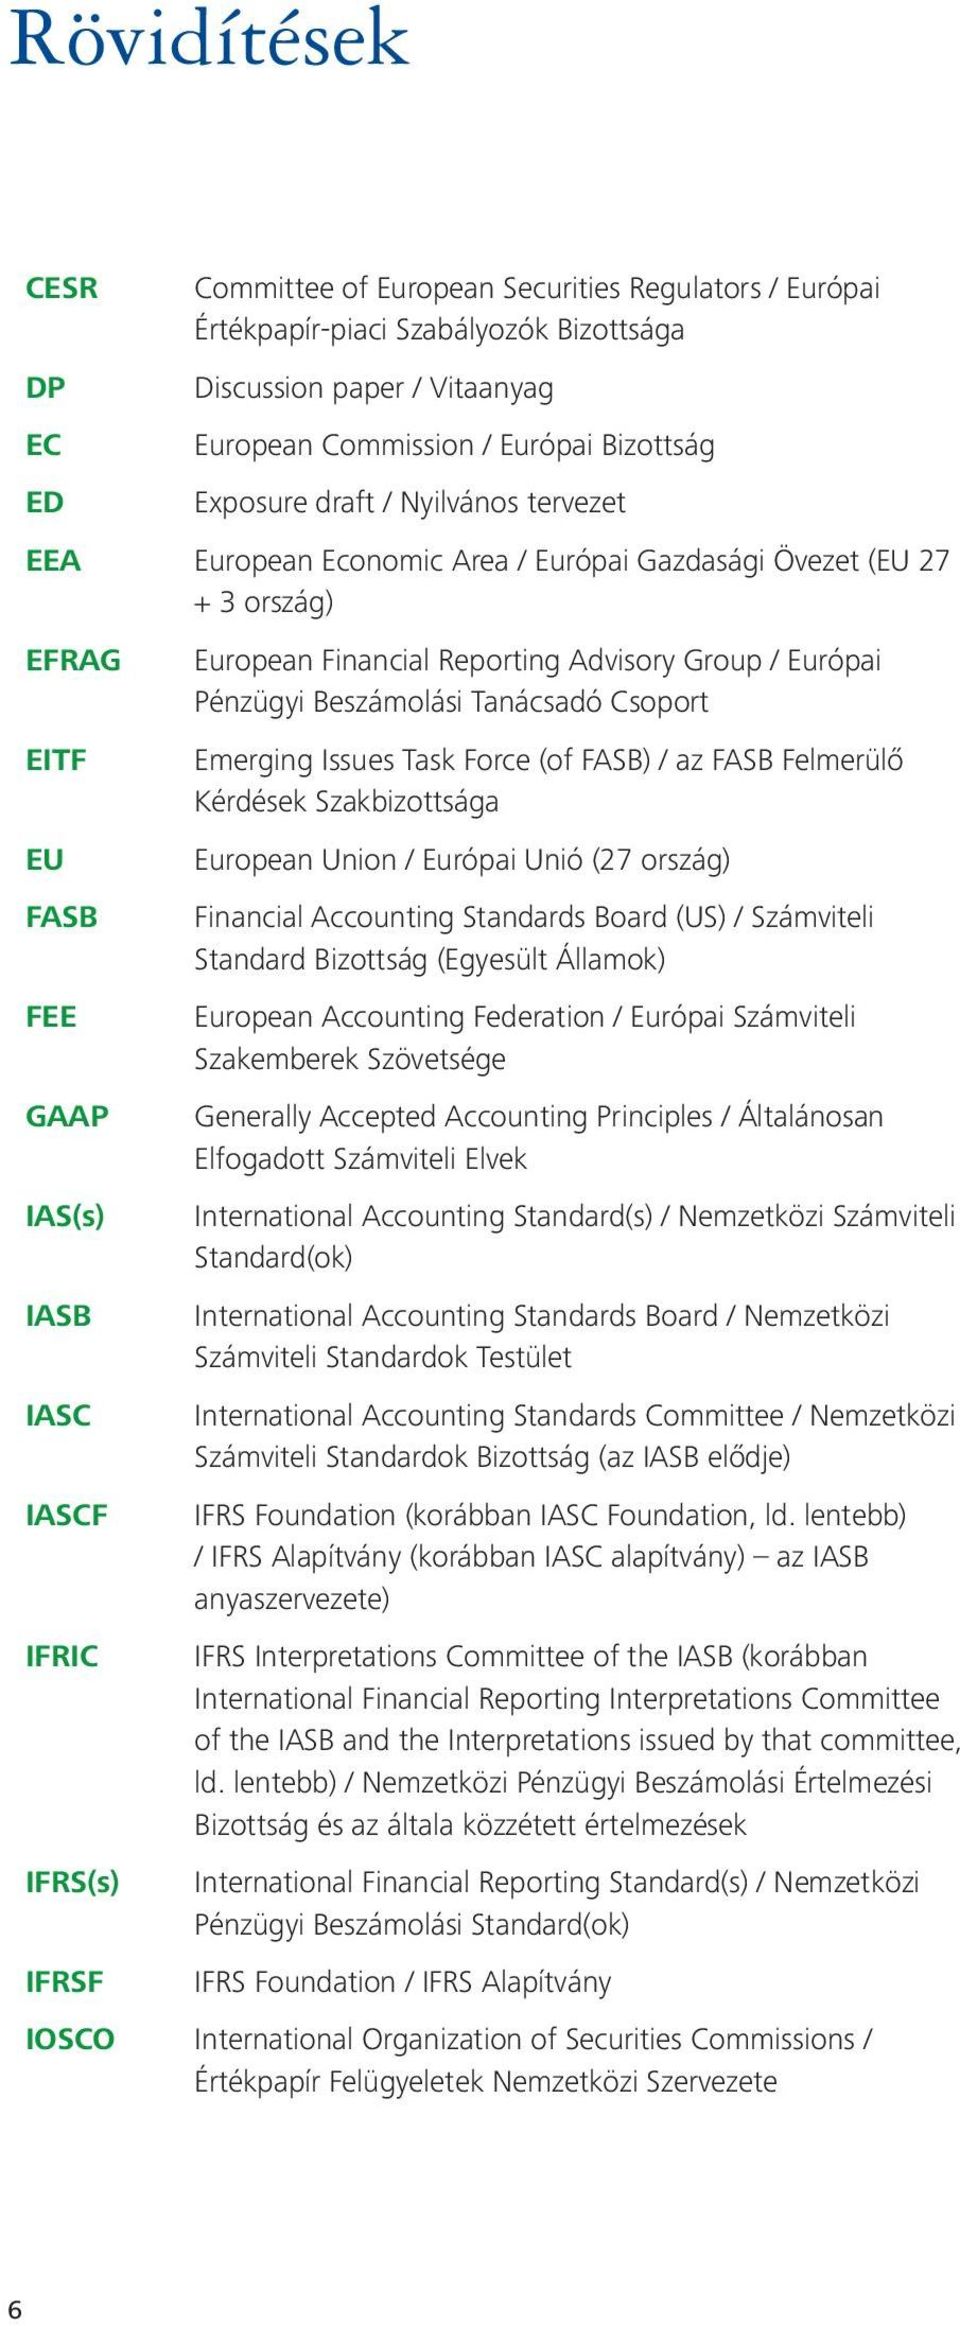 Advisory Group / Európai Pénzügyi Beszámolási Tanácsadó Csoport Emerging Issues Task Force (of FASB) / az FASB Felmerülő Kérdések Szakbizottsága European Union / Európai Unió (27 ország) Financial